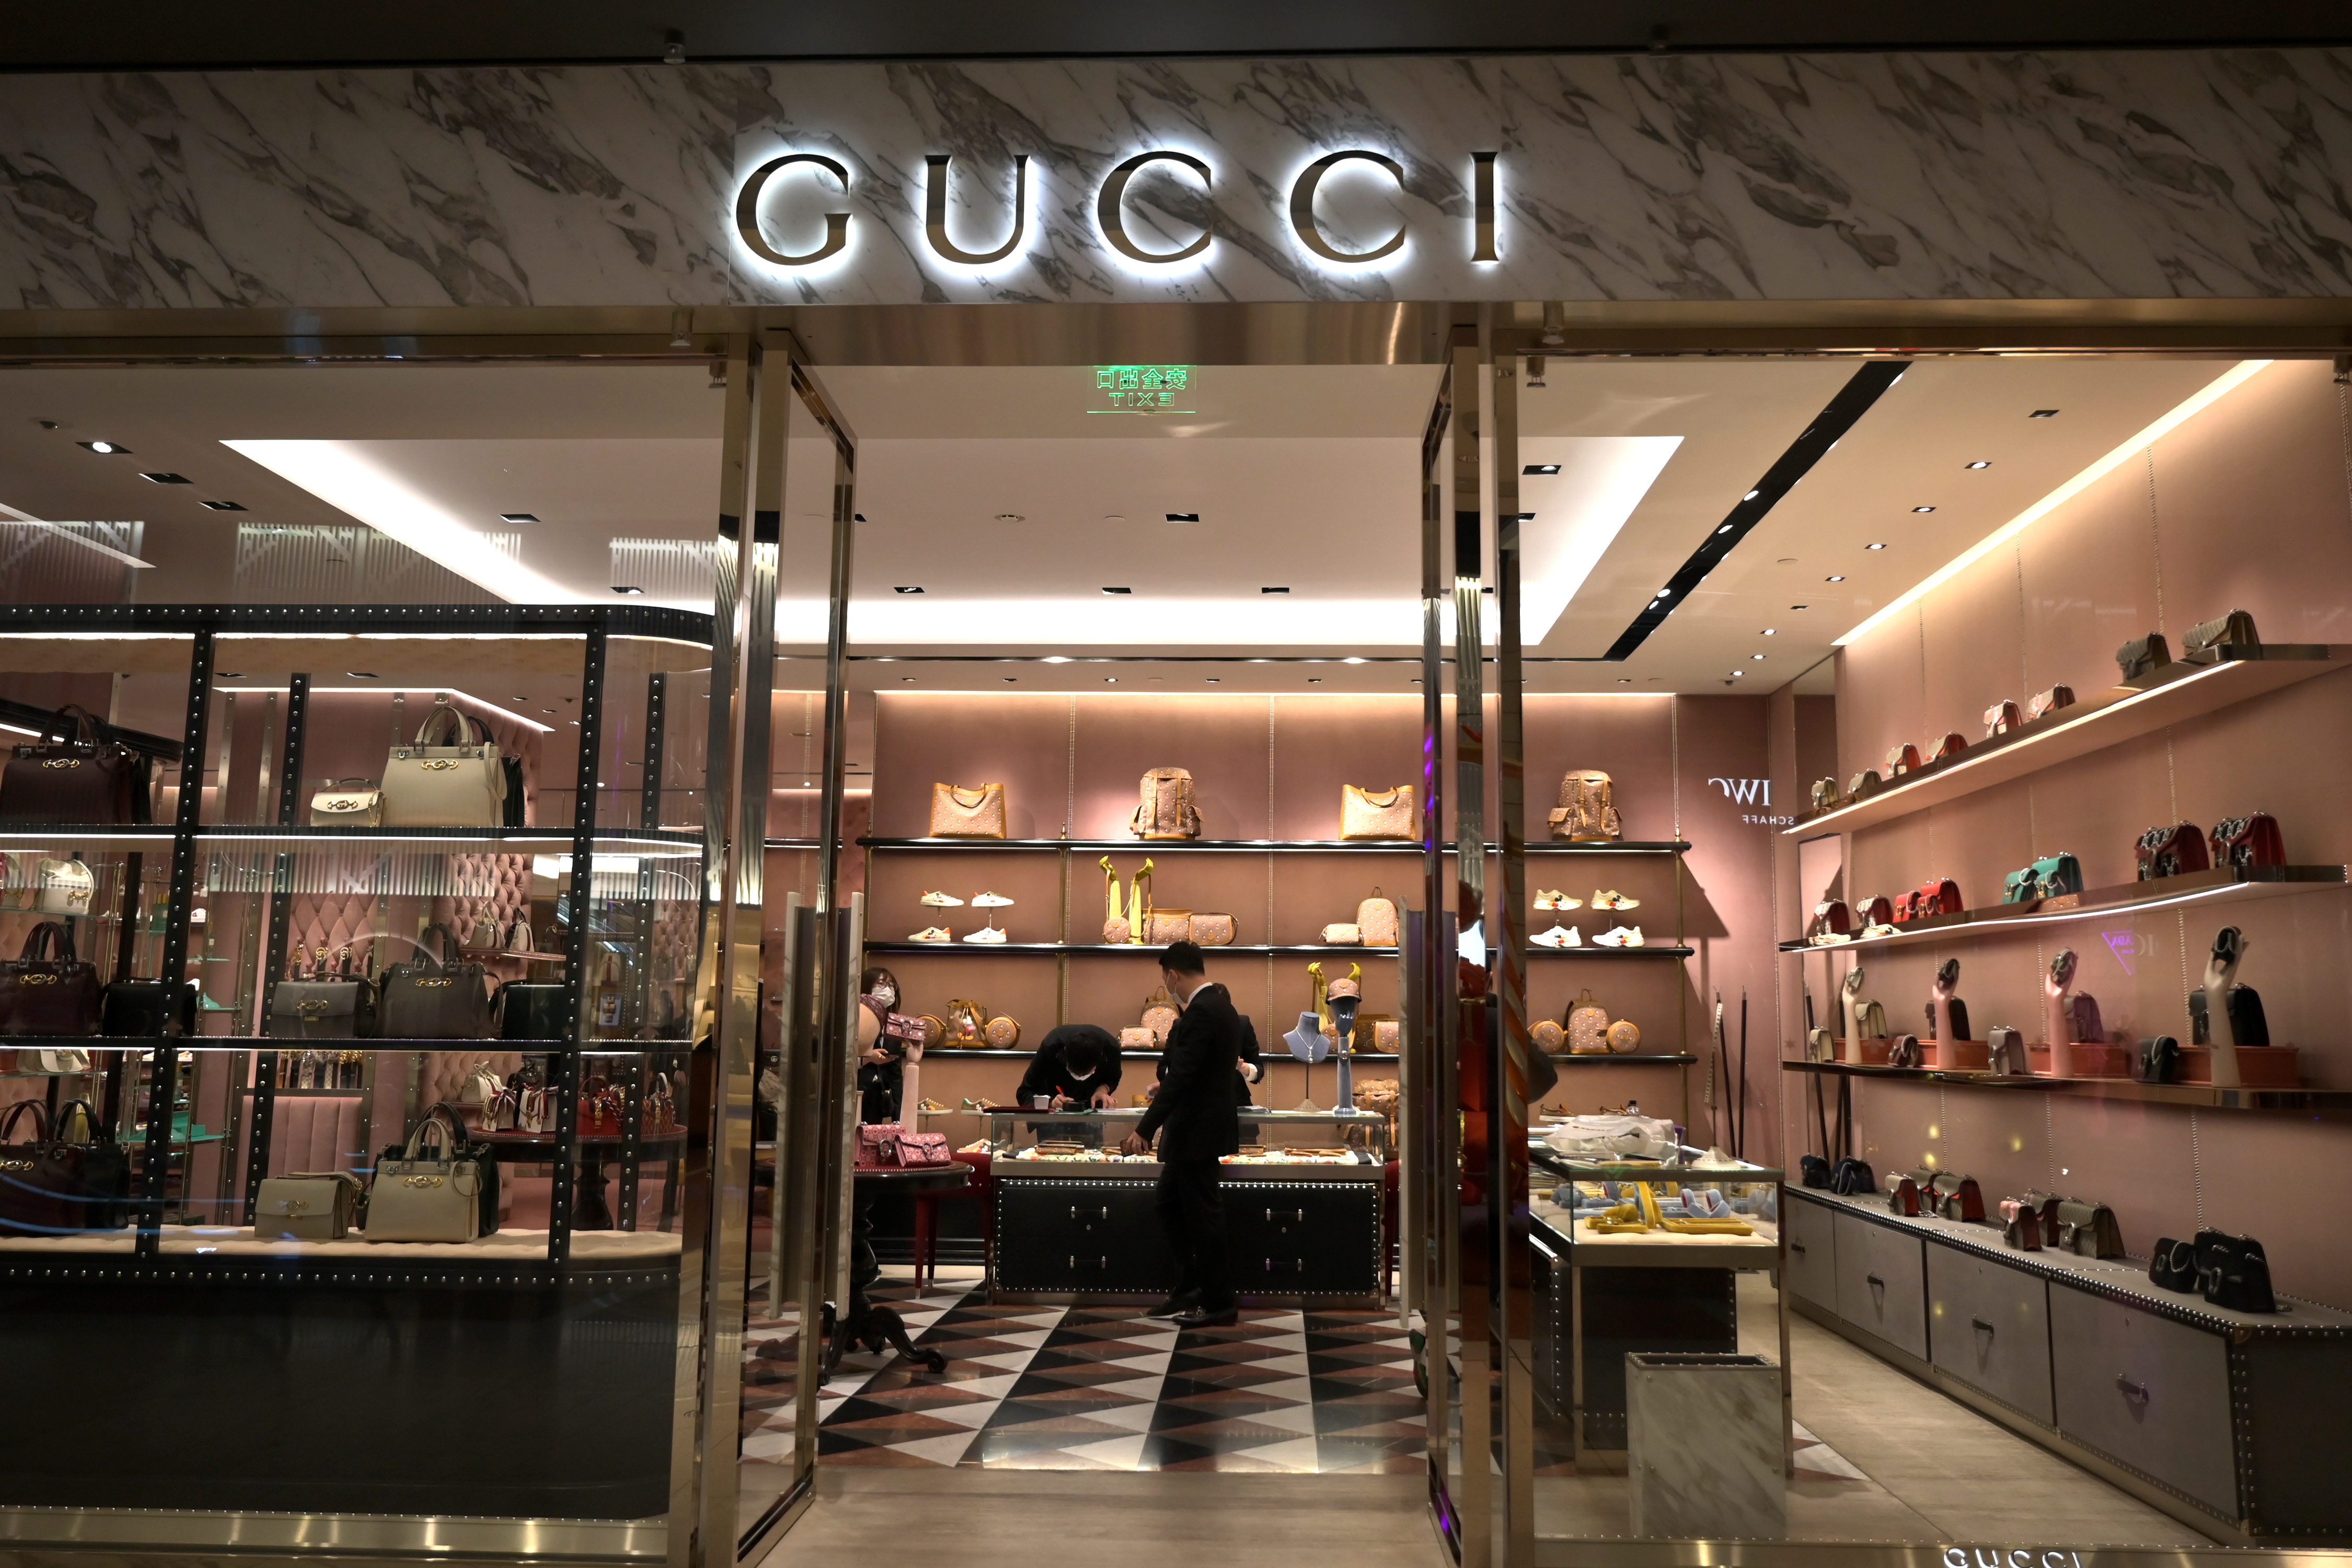 Gucci China, US slump pushes Kering sales down 7%